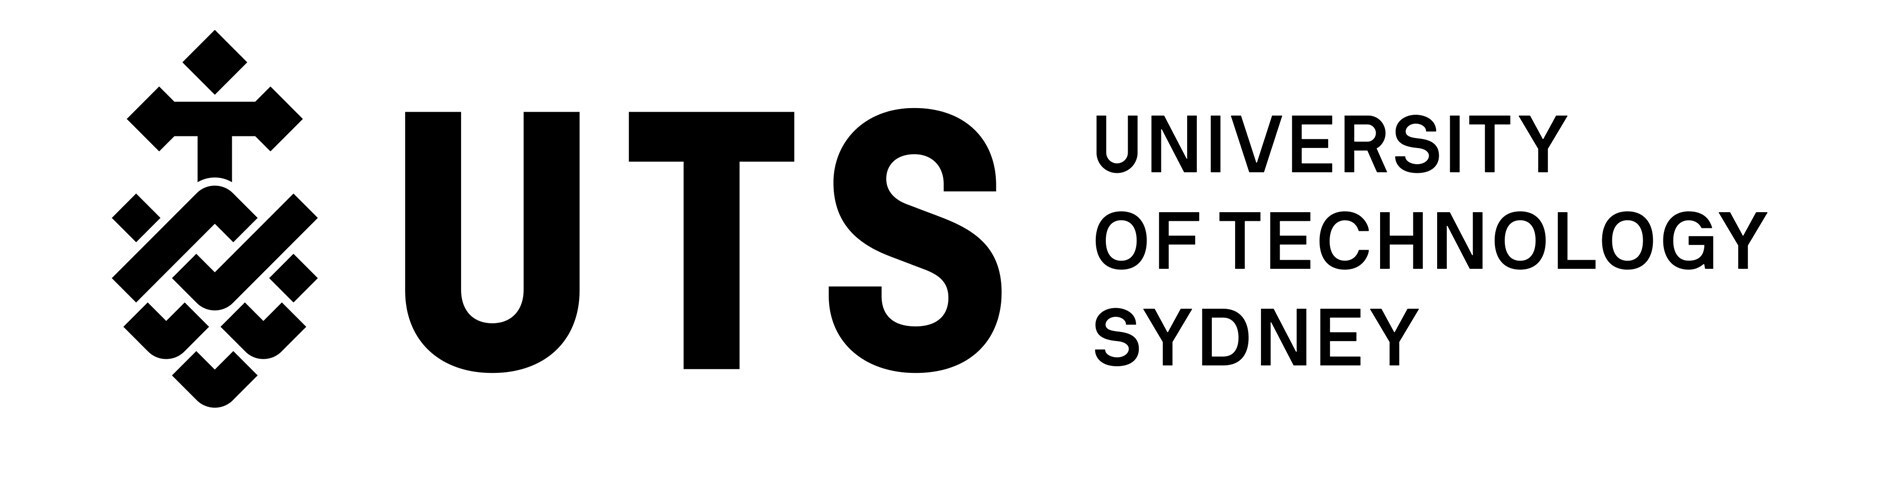 UTS_logo7j2tp.jpg